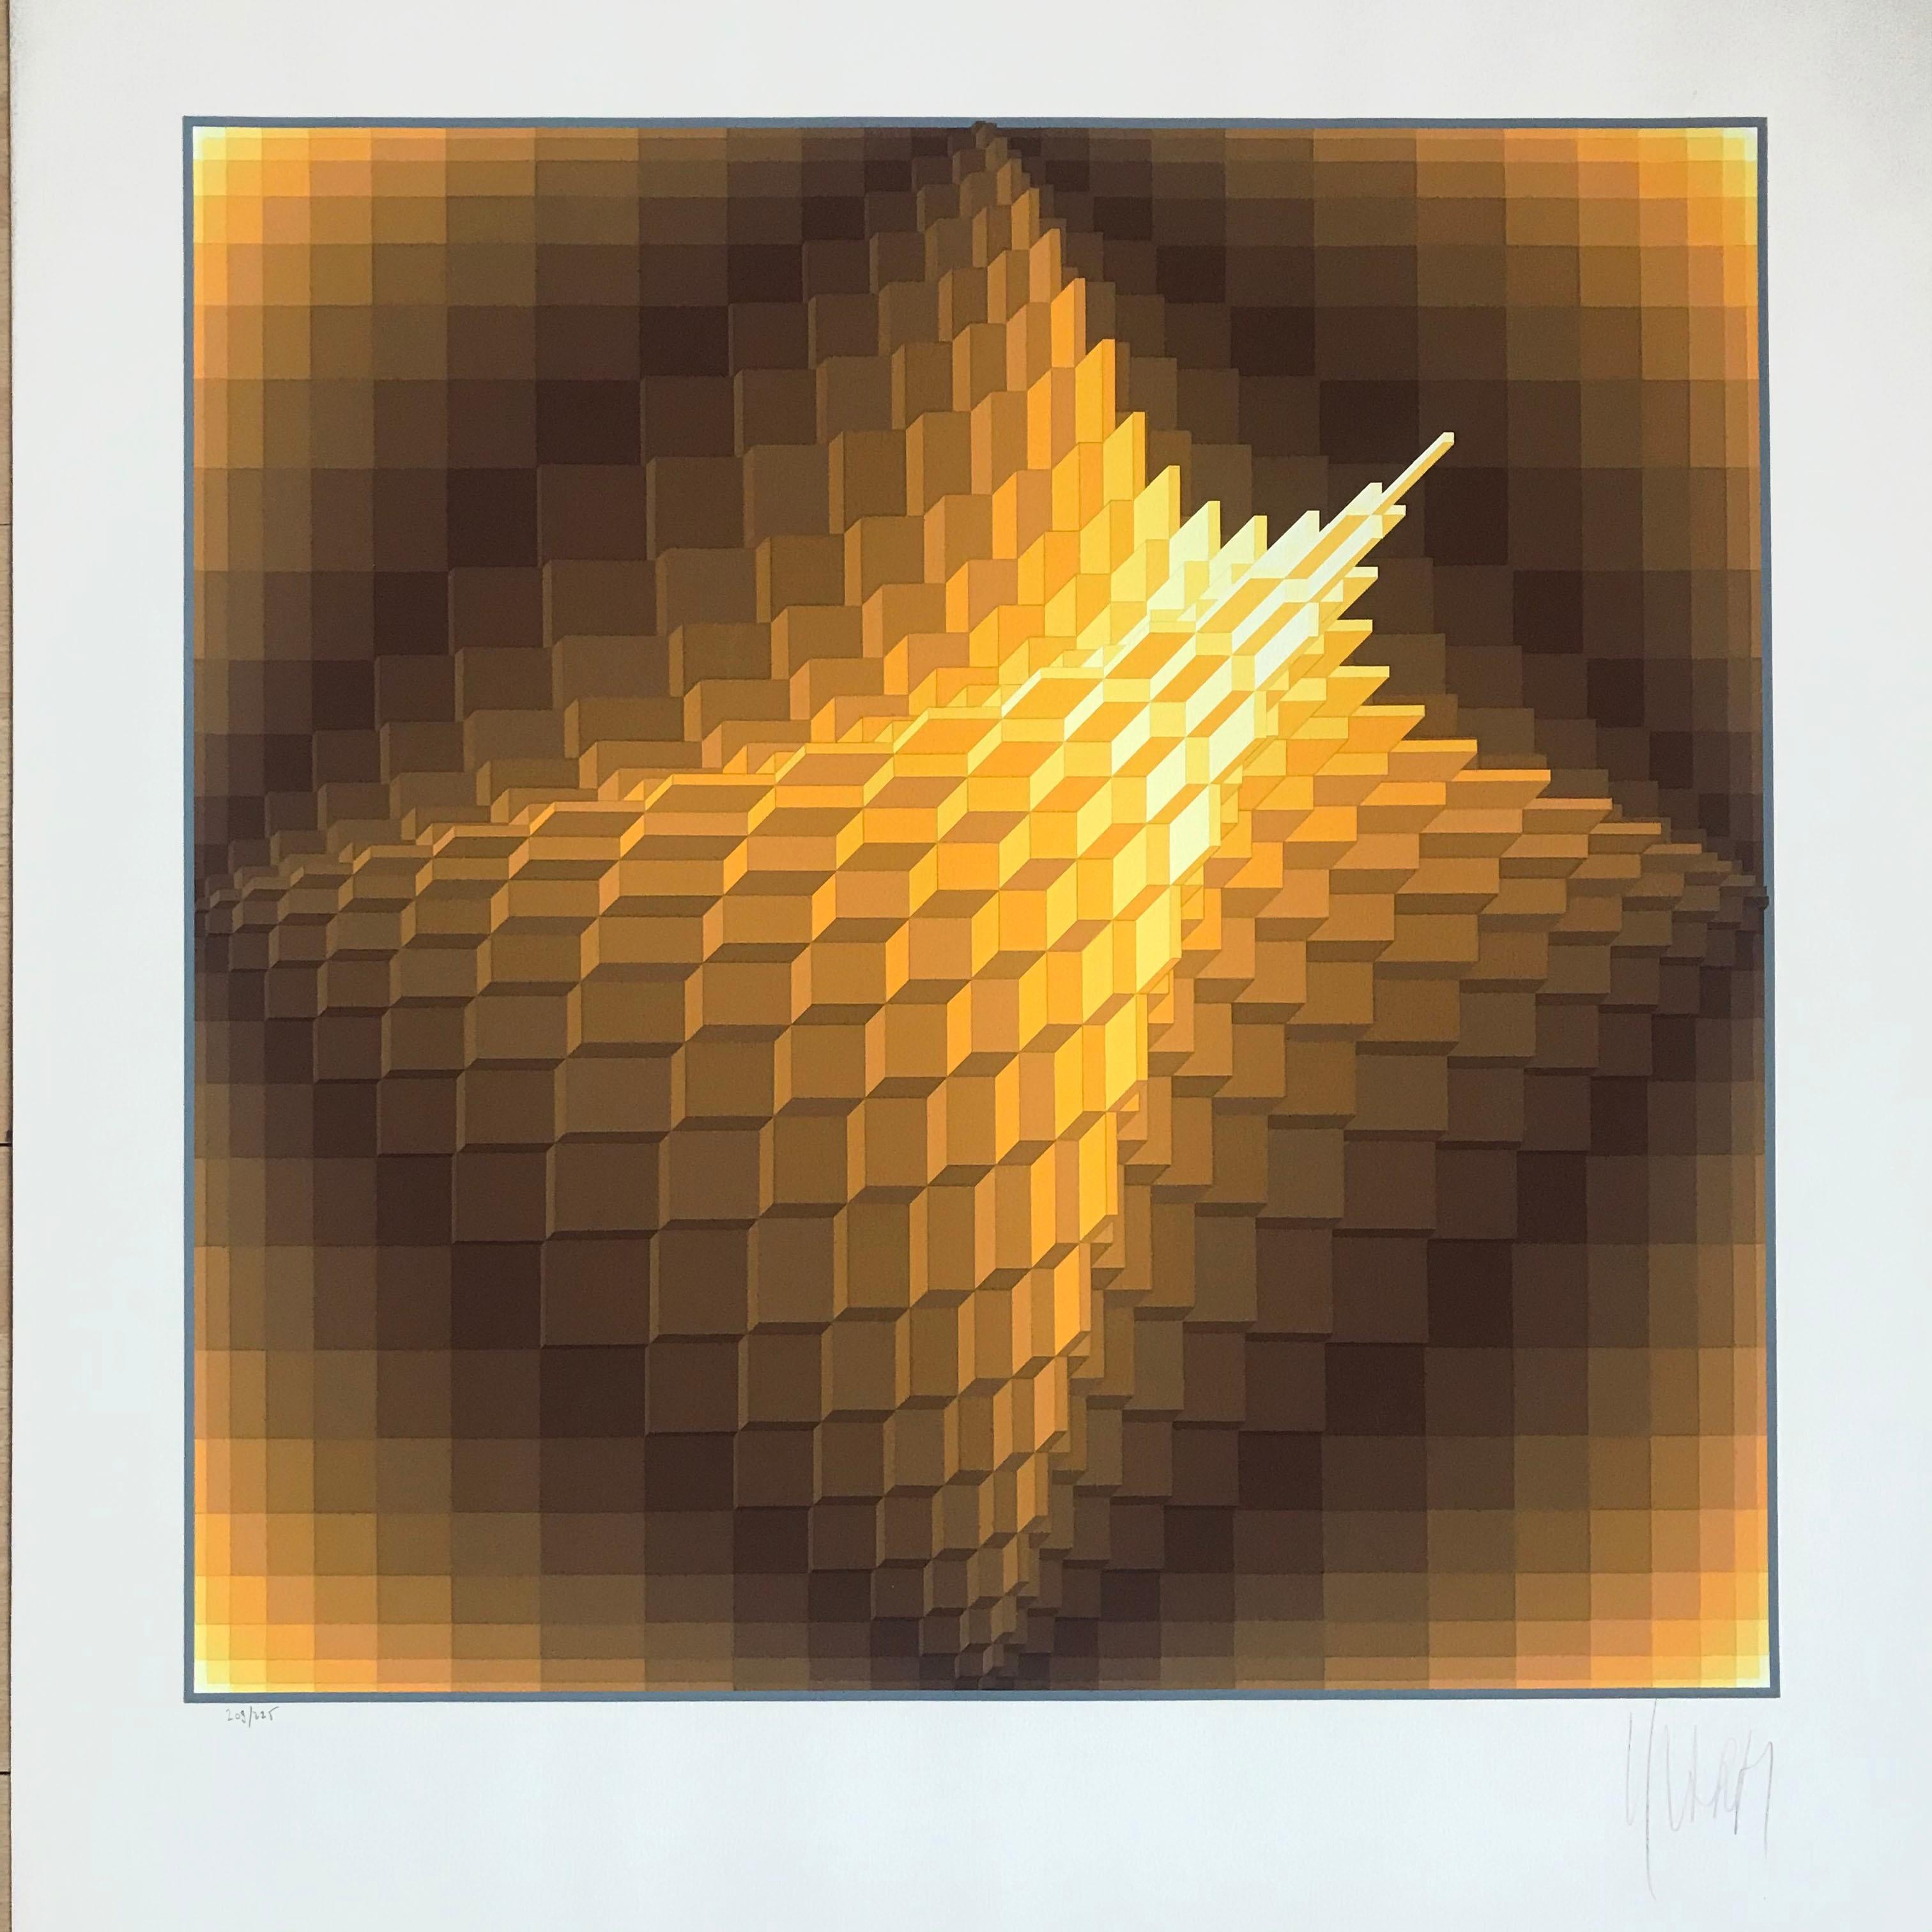 Yvaral Lithographie "Struktur géométrique 1" 1974.